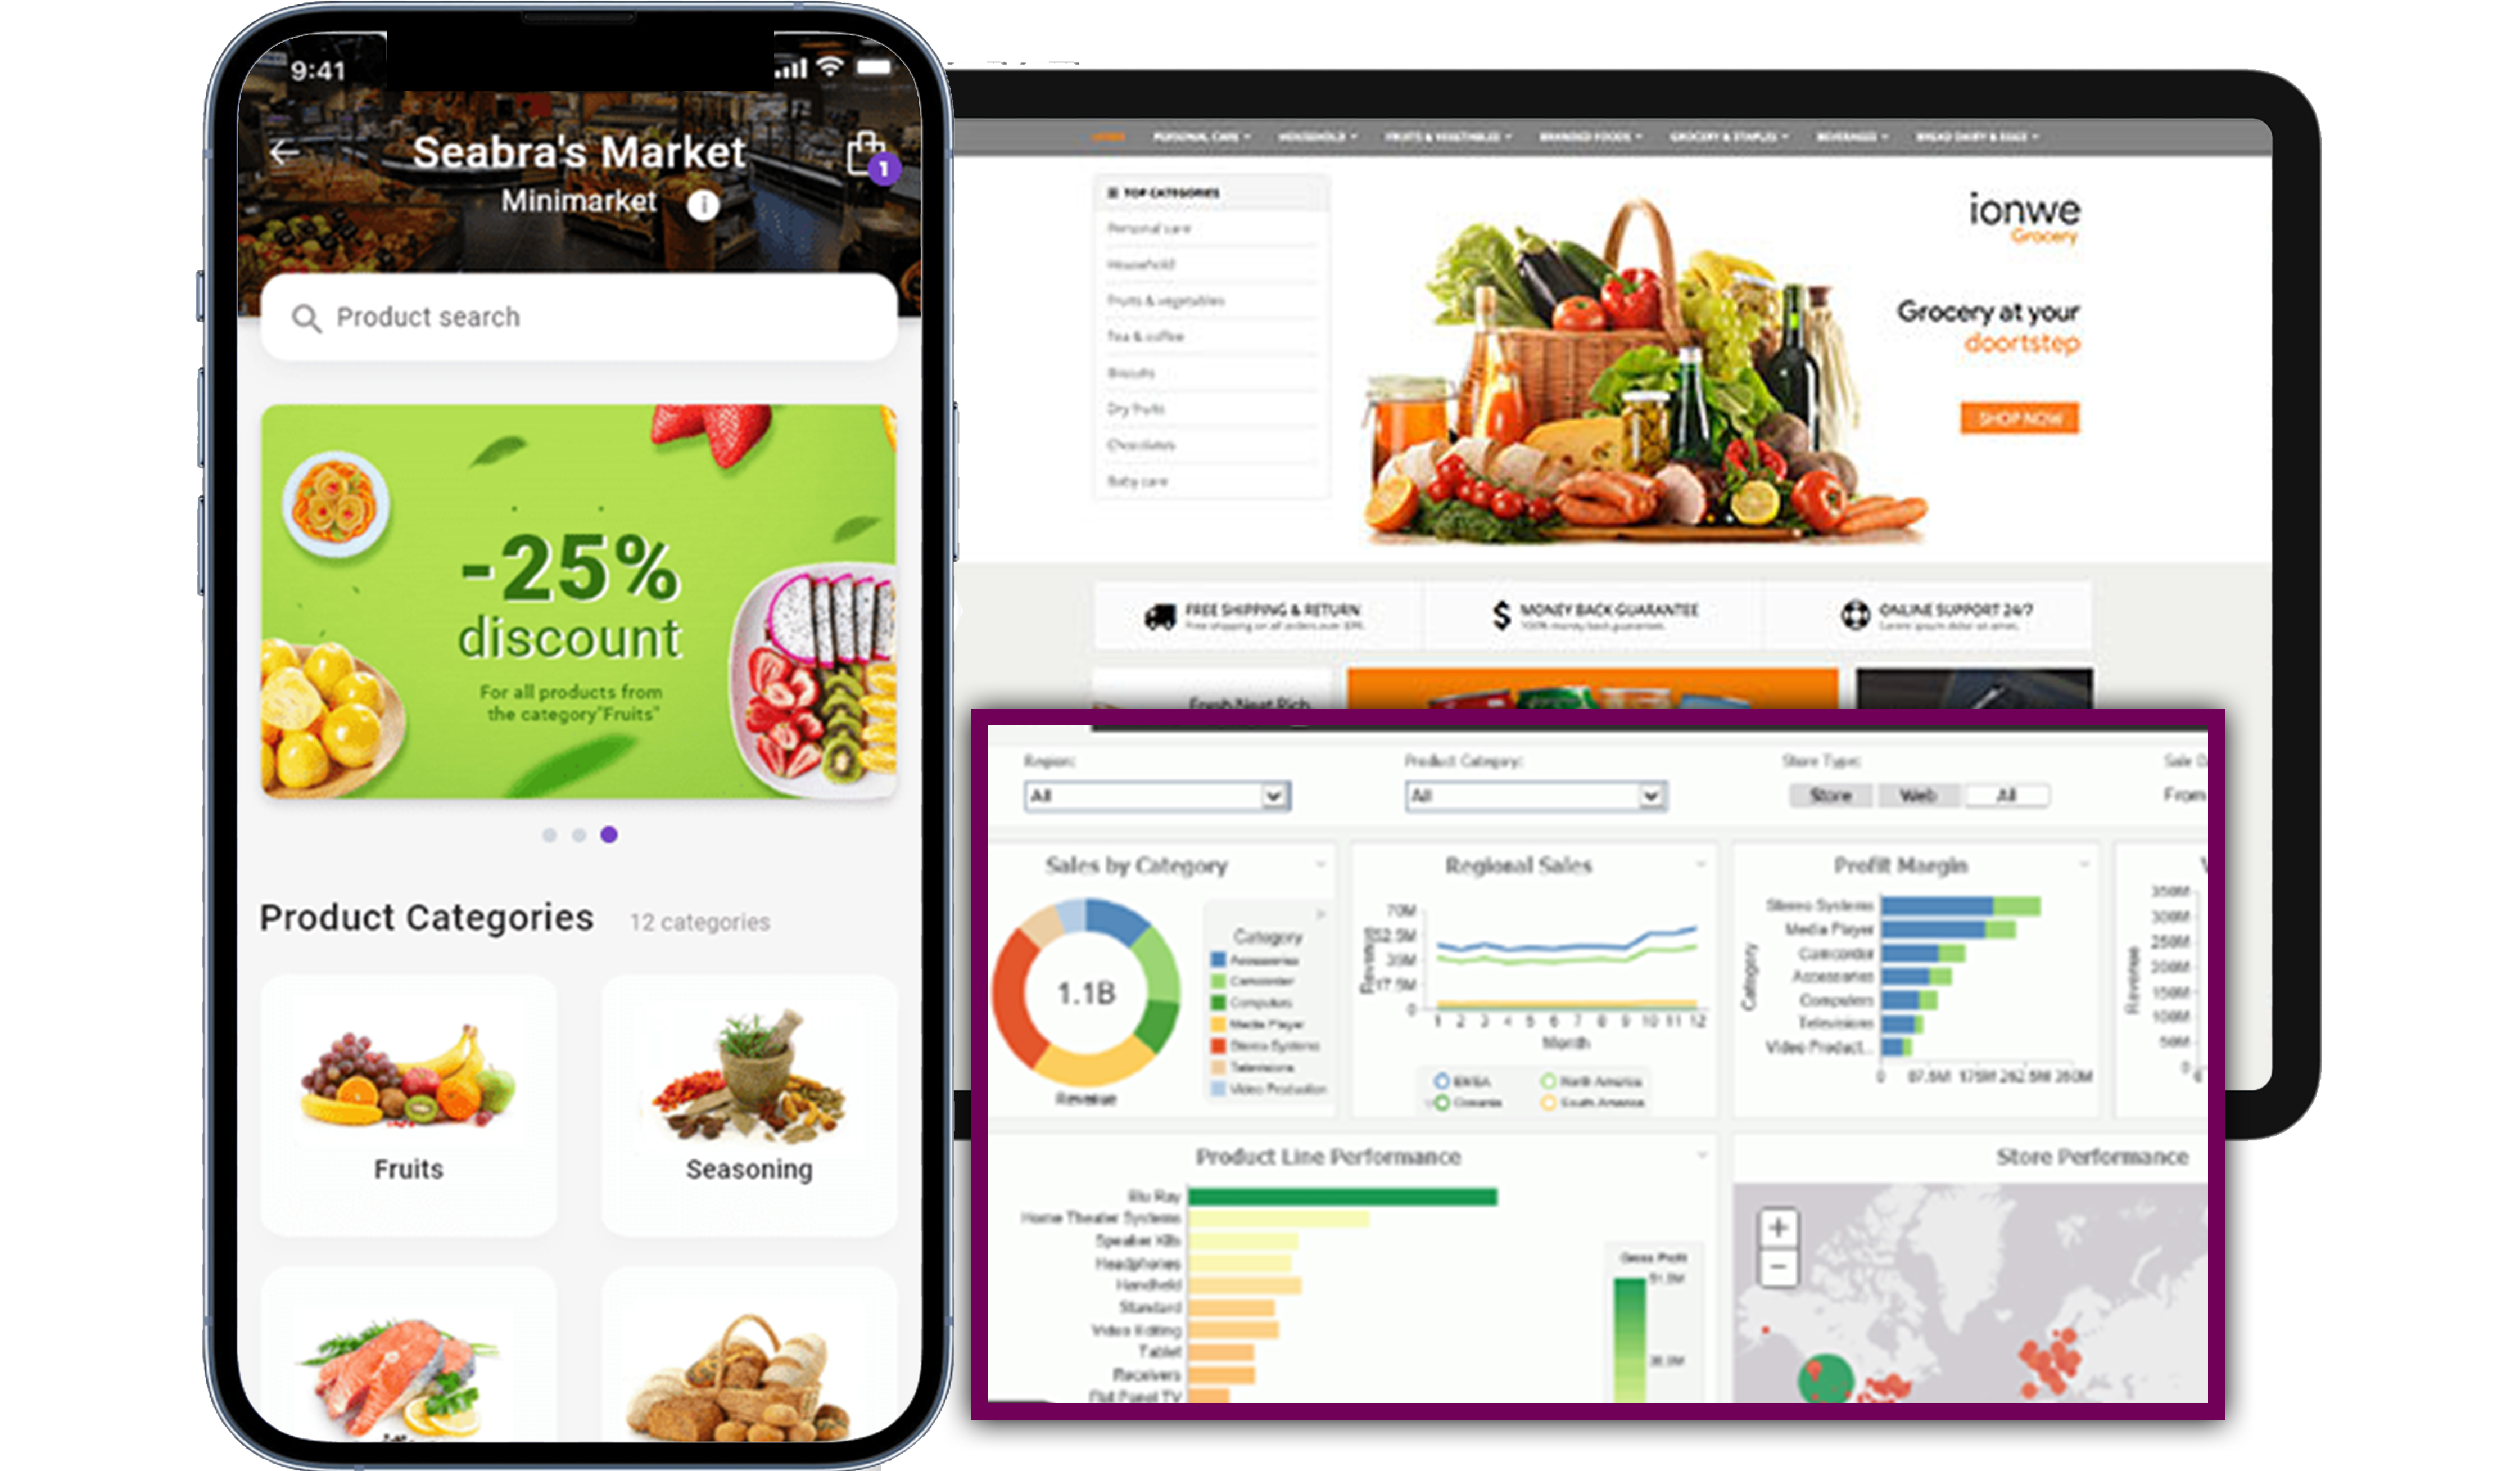 extract-farmigo-grocery-menu-price-and-review-data